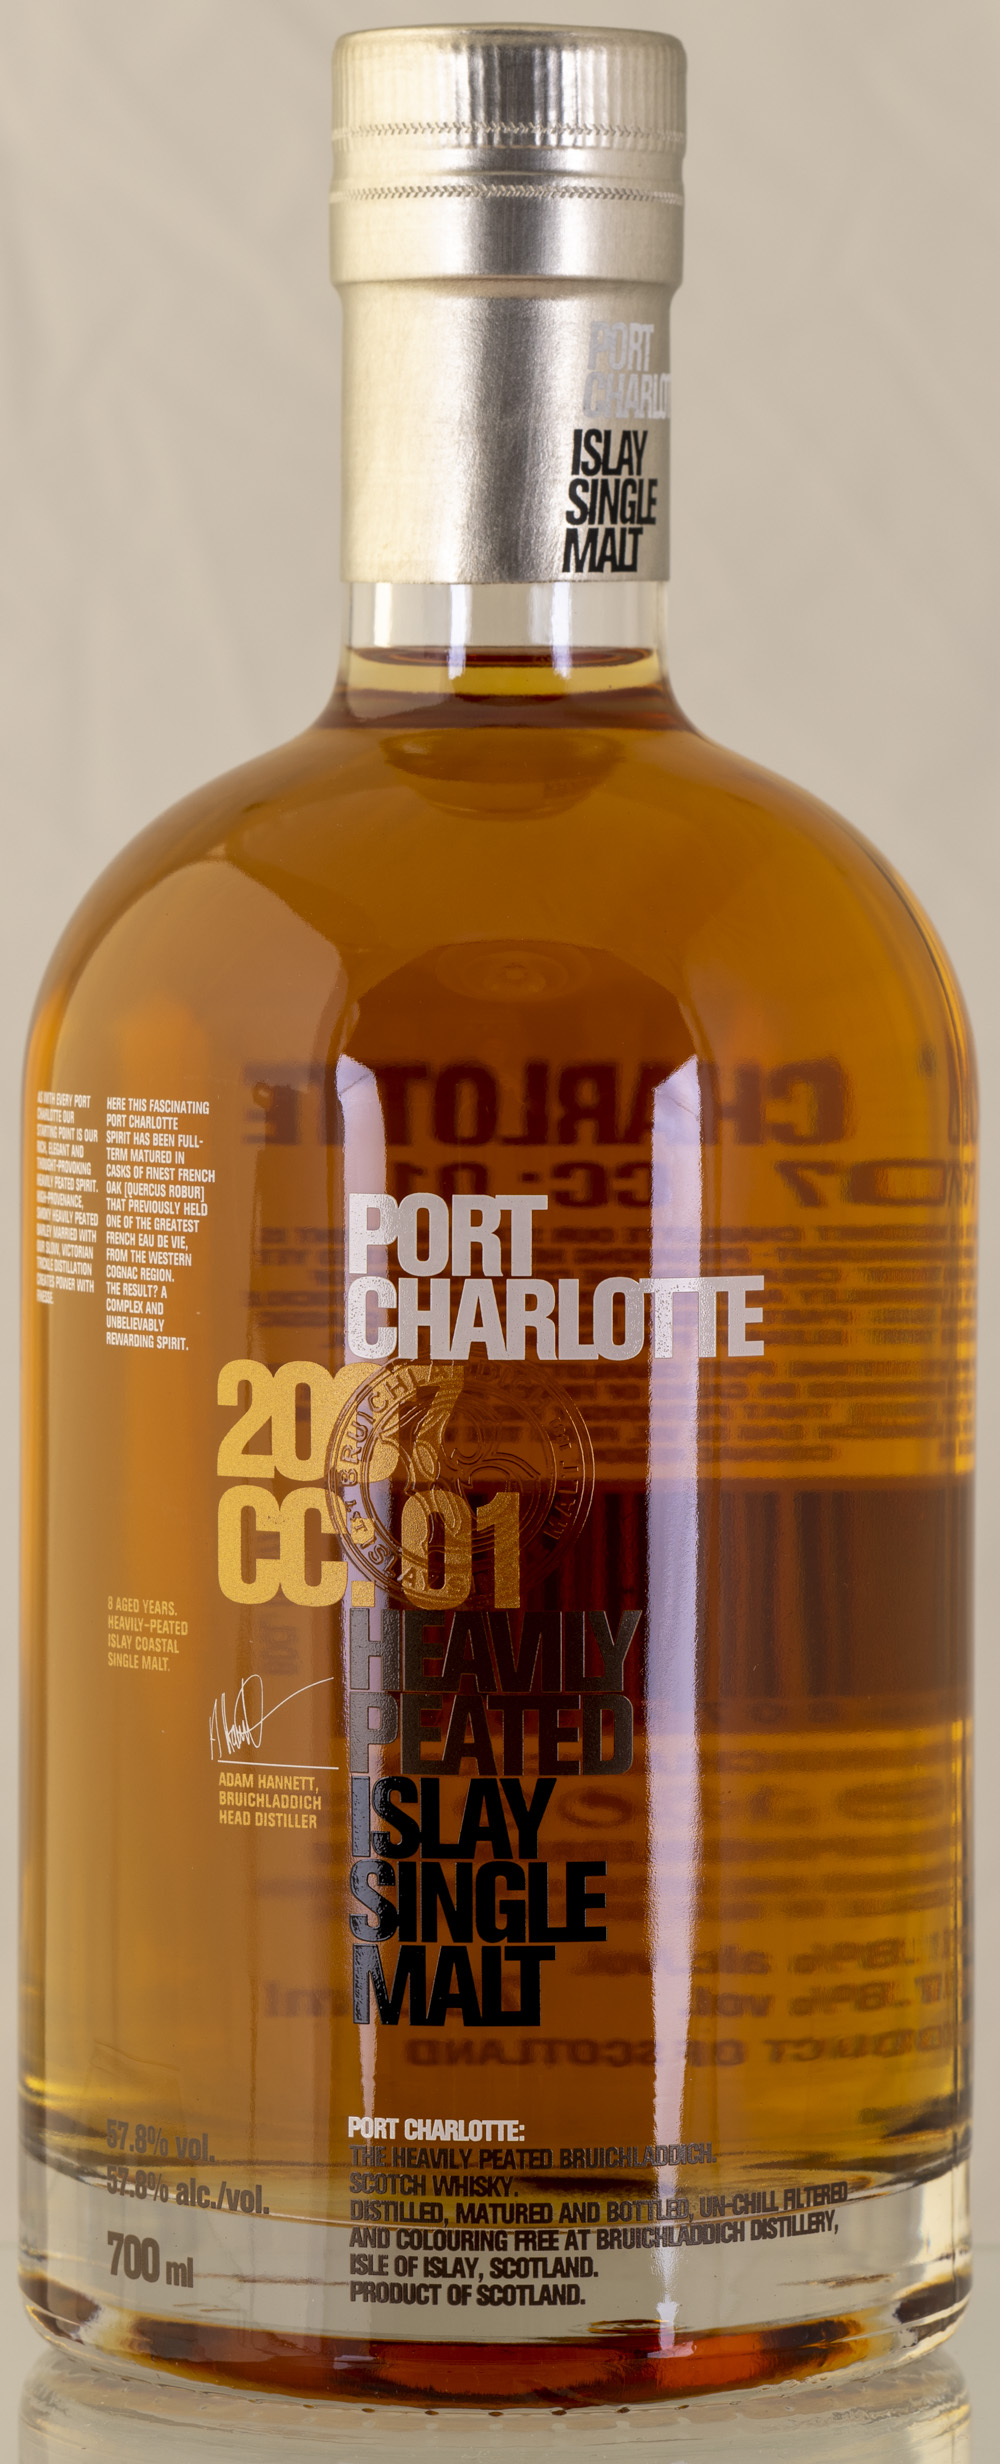 Billede: PHC_2291 - Port Charlotte 2007 CC01 - bottle front.jpg